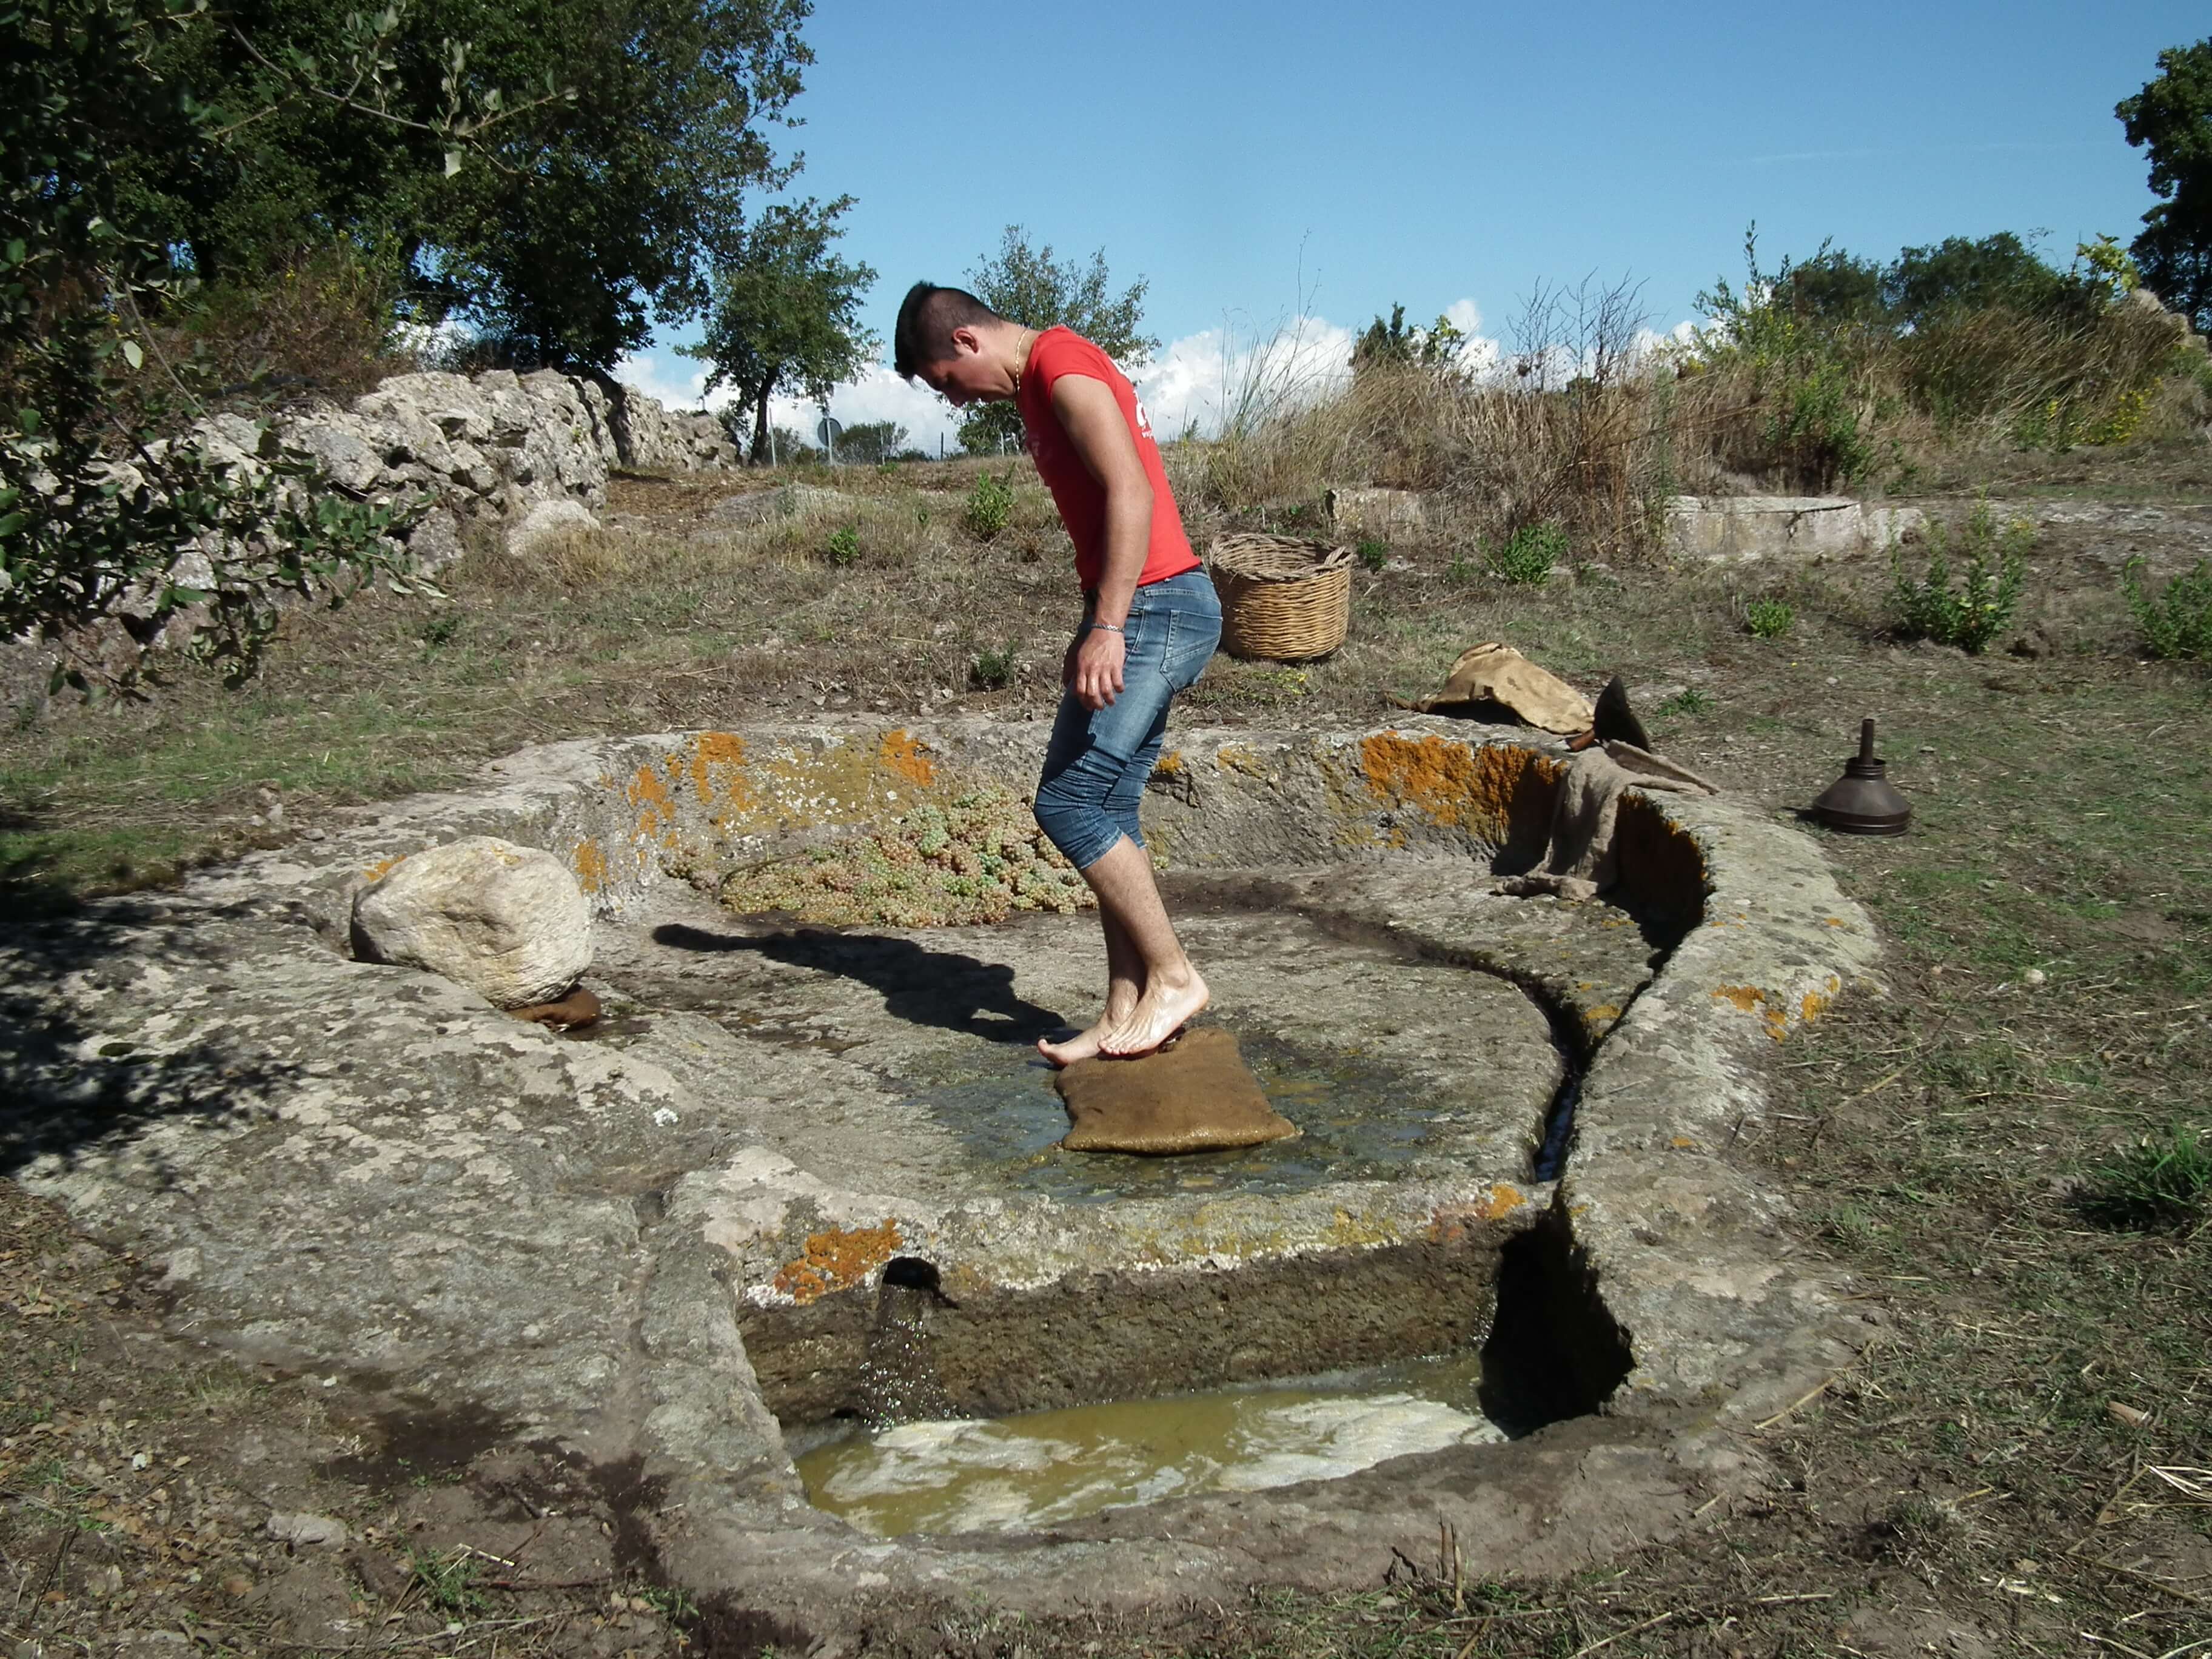 Sos lacos de catzigare: i palmenti rupestri della Sardegna centrale